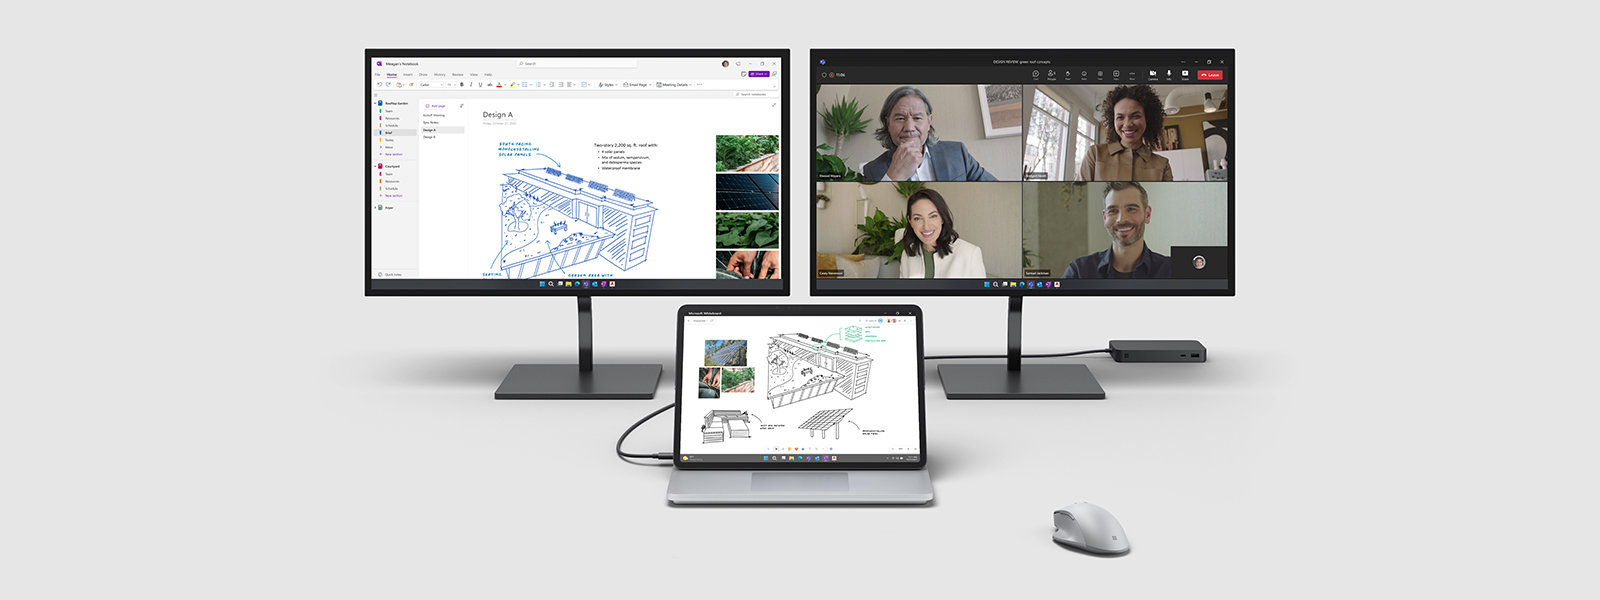 Surface Laptop Studio 2 připojený ke dvěma externím monitorům s různými otevřenými aplikacemi Microsoft